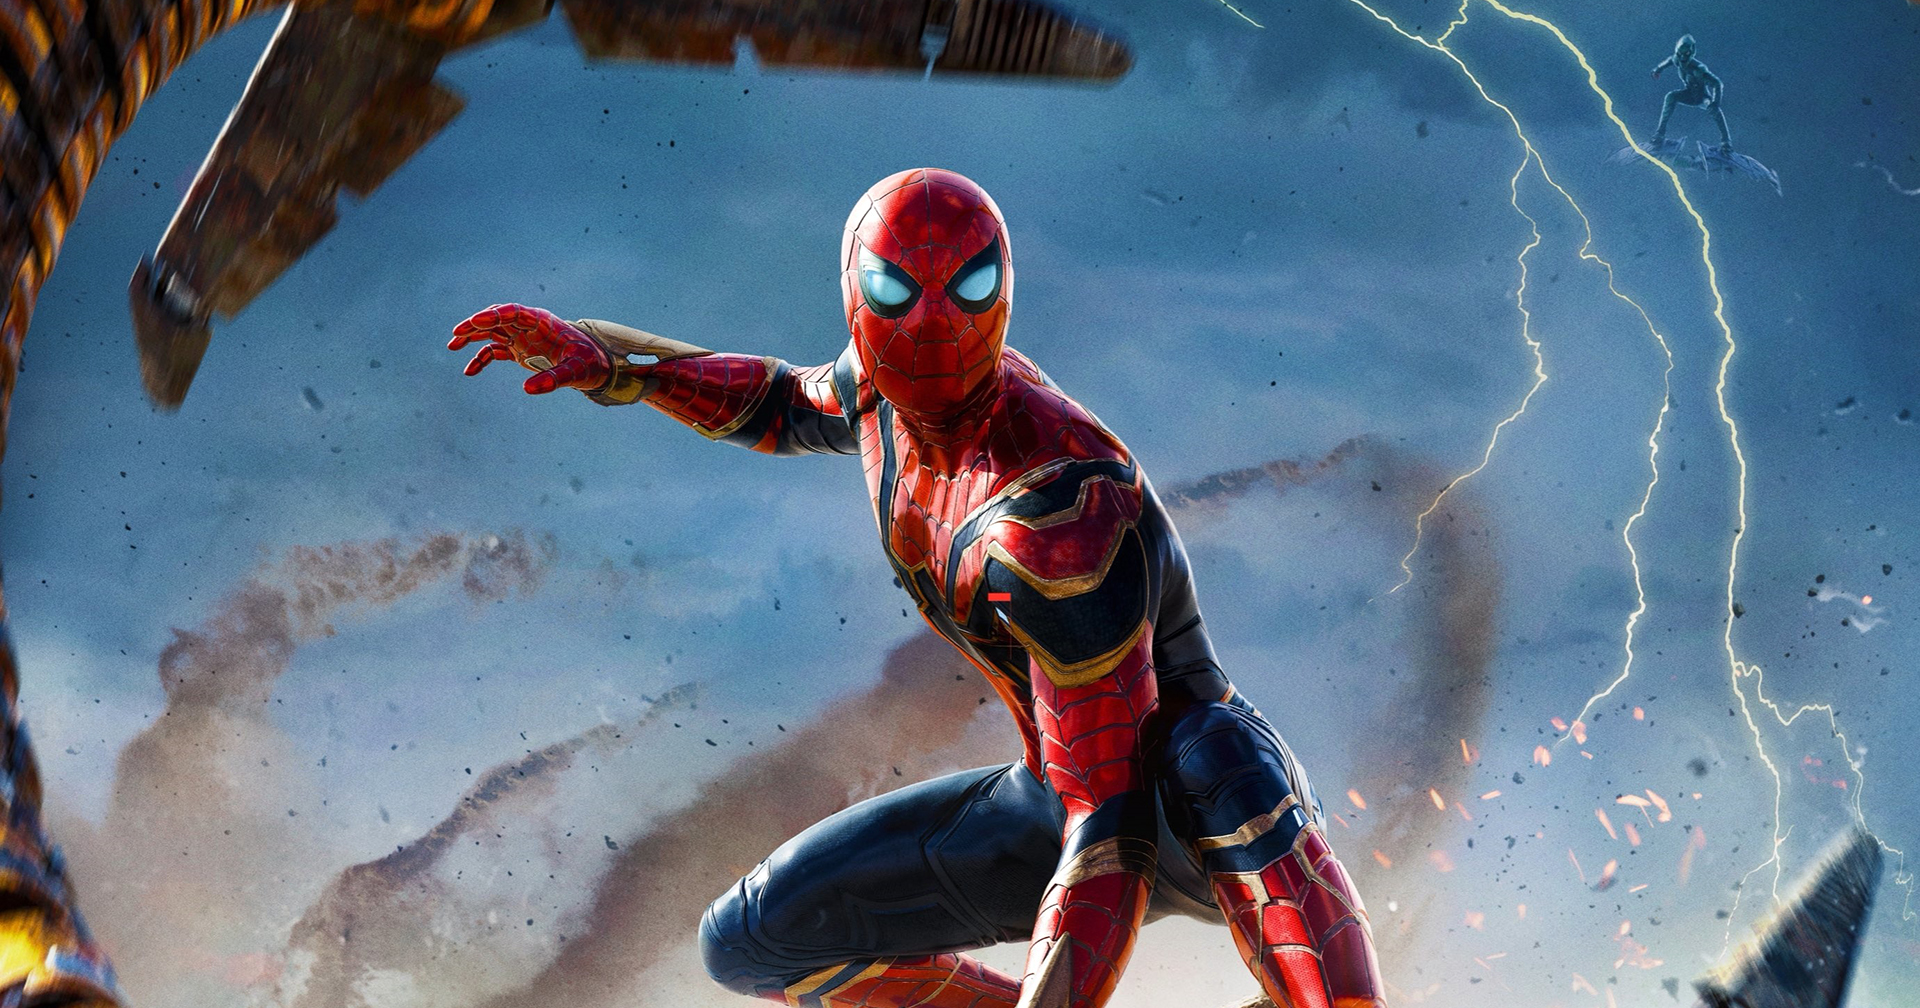 โรงหนัง AMC และค่ายหนัง Sony Pictures แจก NFT ให้แก่ผู้ที่ซื้อตั๋ว Spider-Man ล่วงหน้า